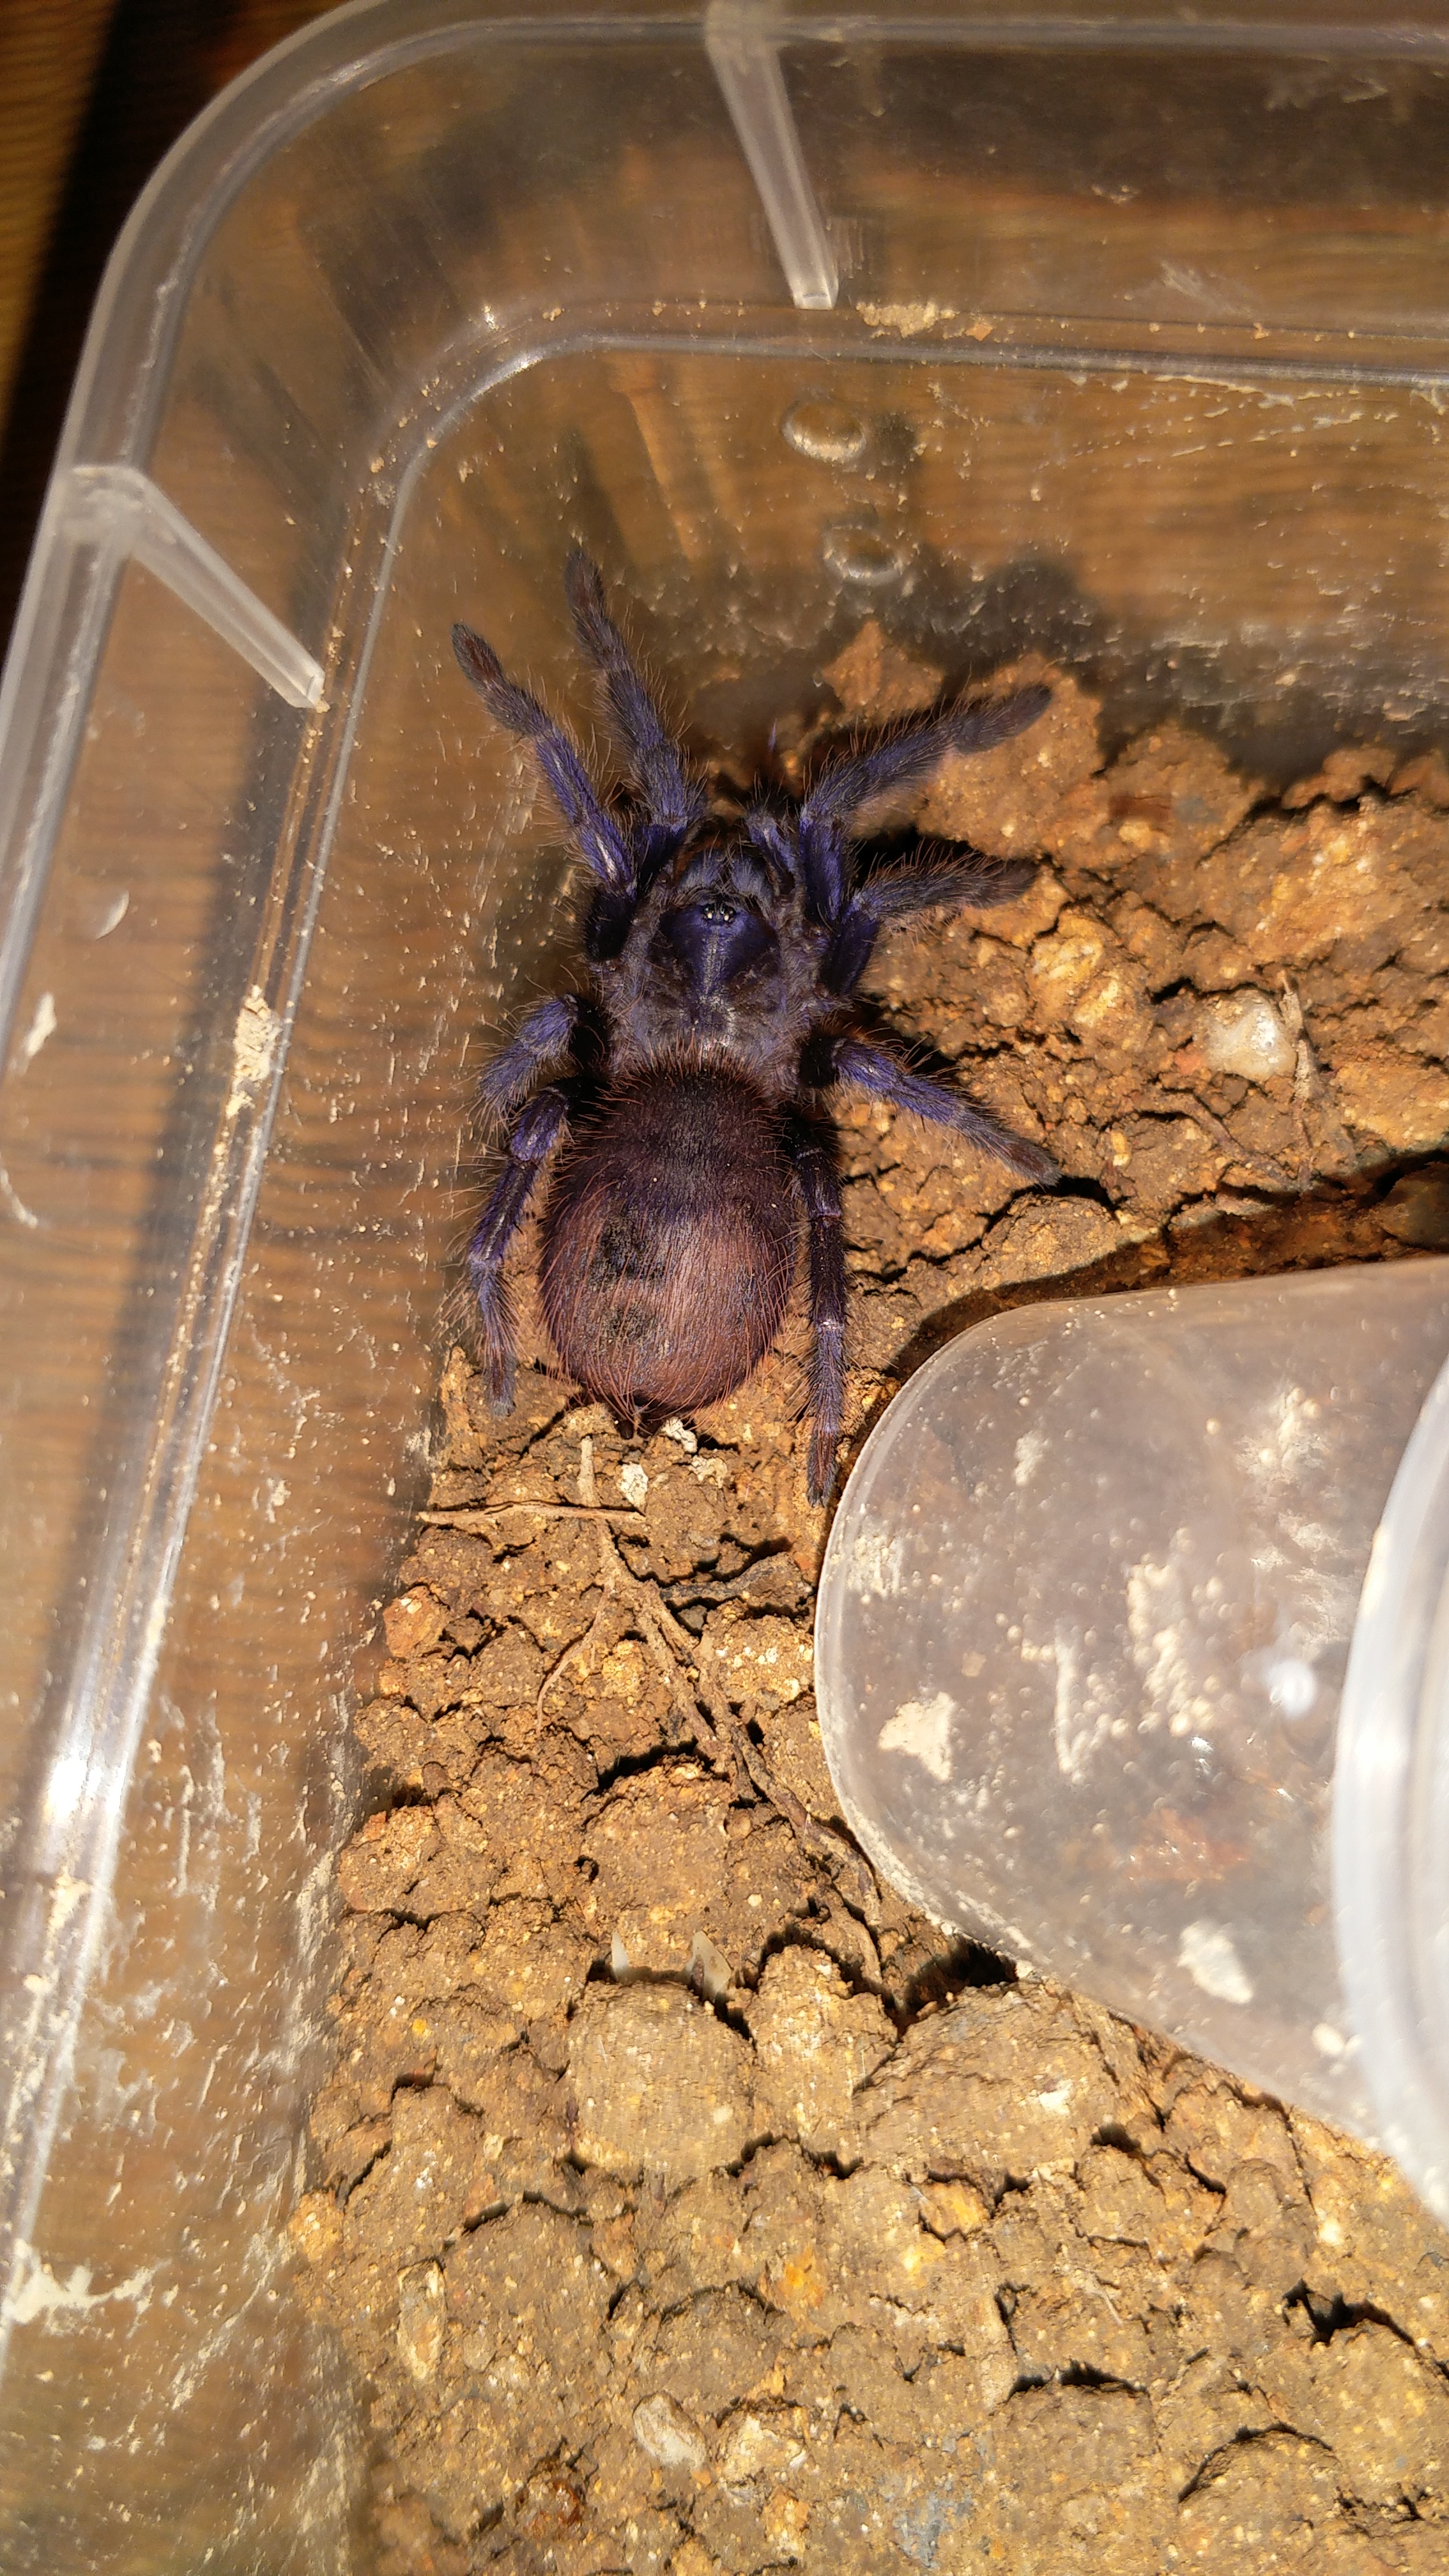 巴西大蓝蛛幼体图片